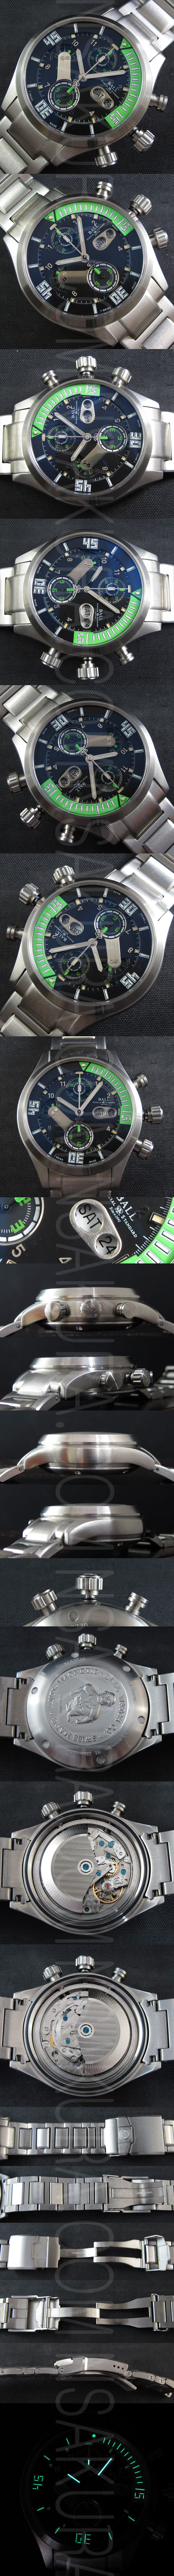 レプリカ時計ボールウォッチ エンジニア マスターII ダイバー クロノグラフ，Asian 7750搭載 - ウインドウを閉じる